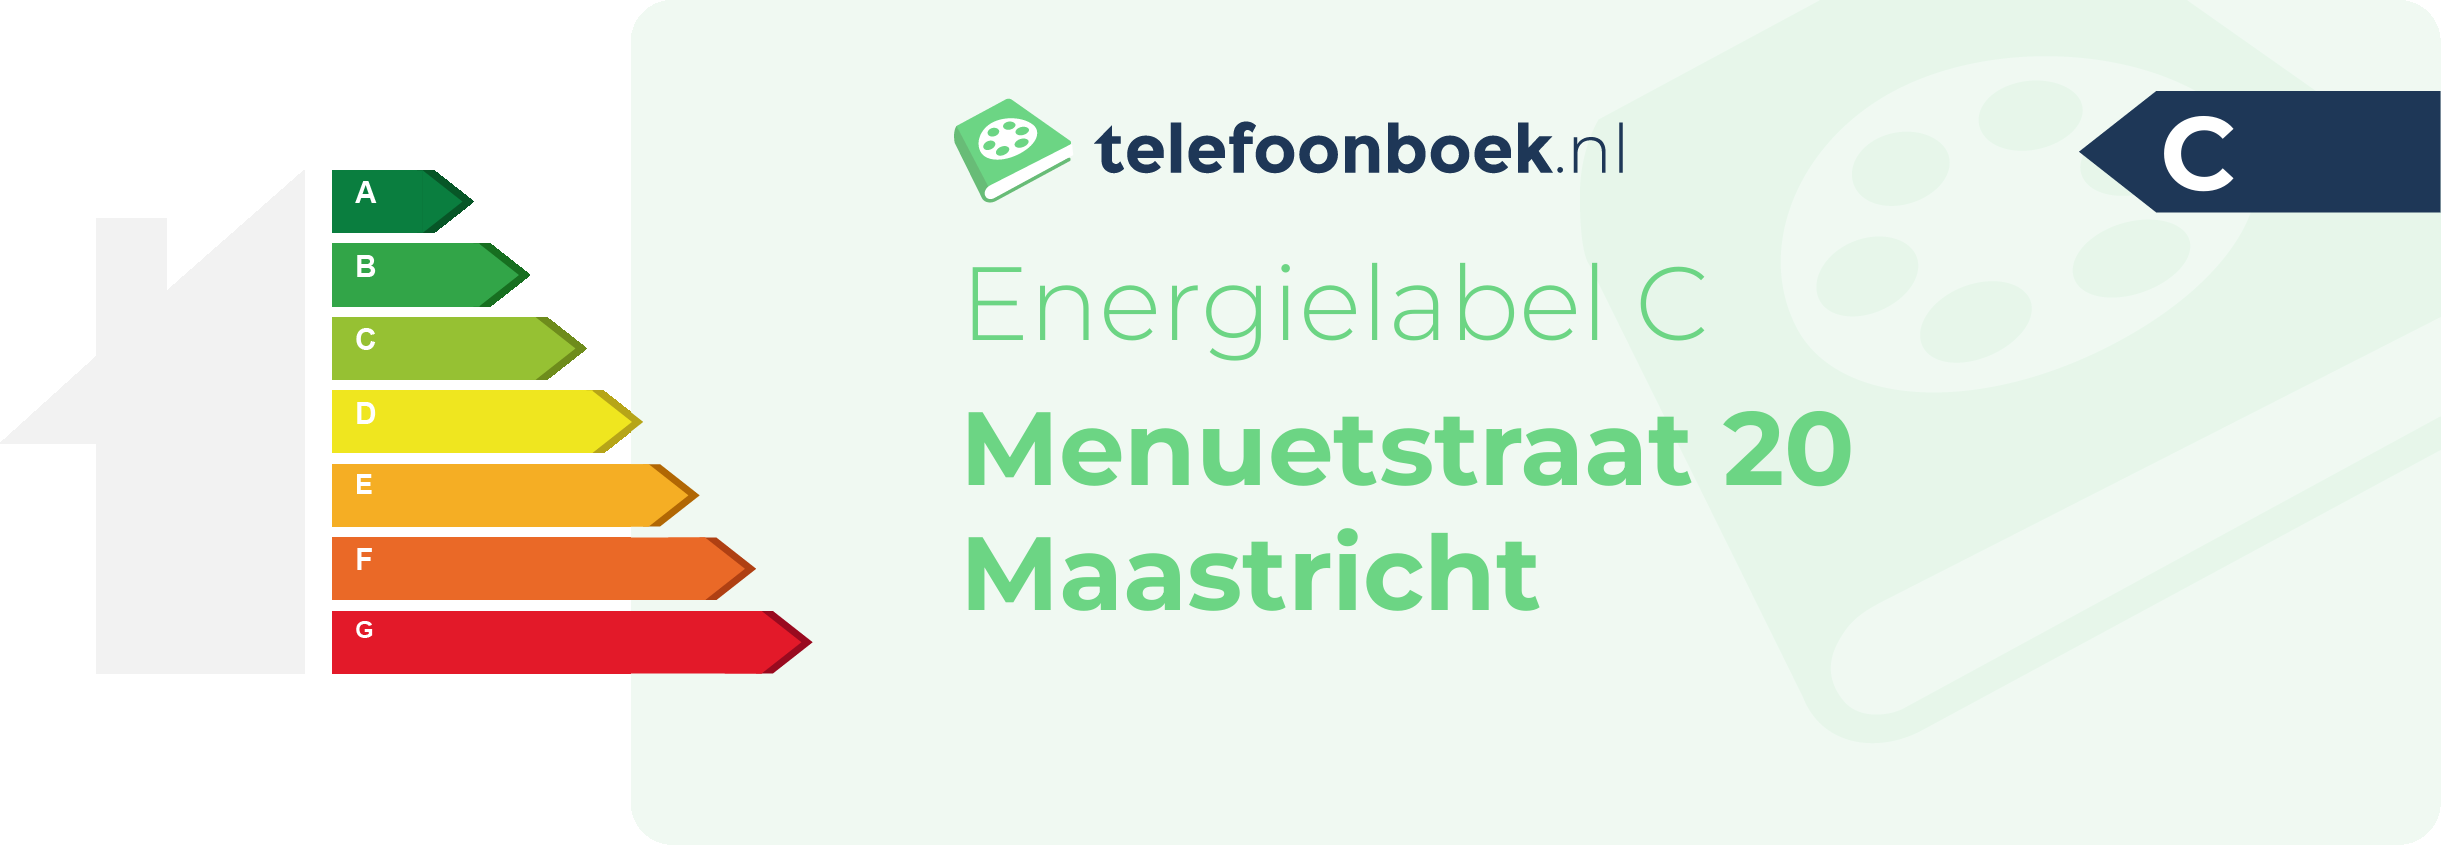 Energielabel Menuetstraat 20 Maastricht